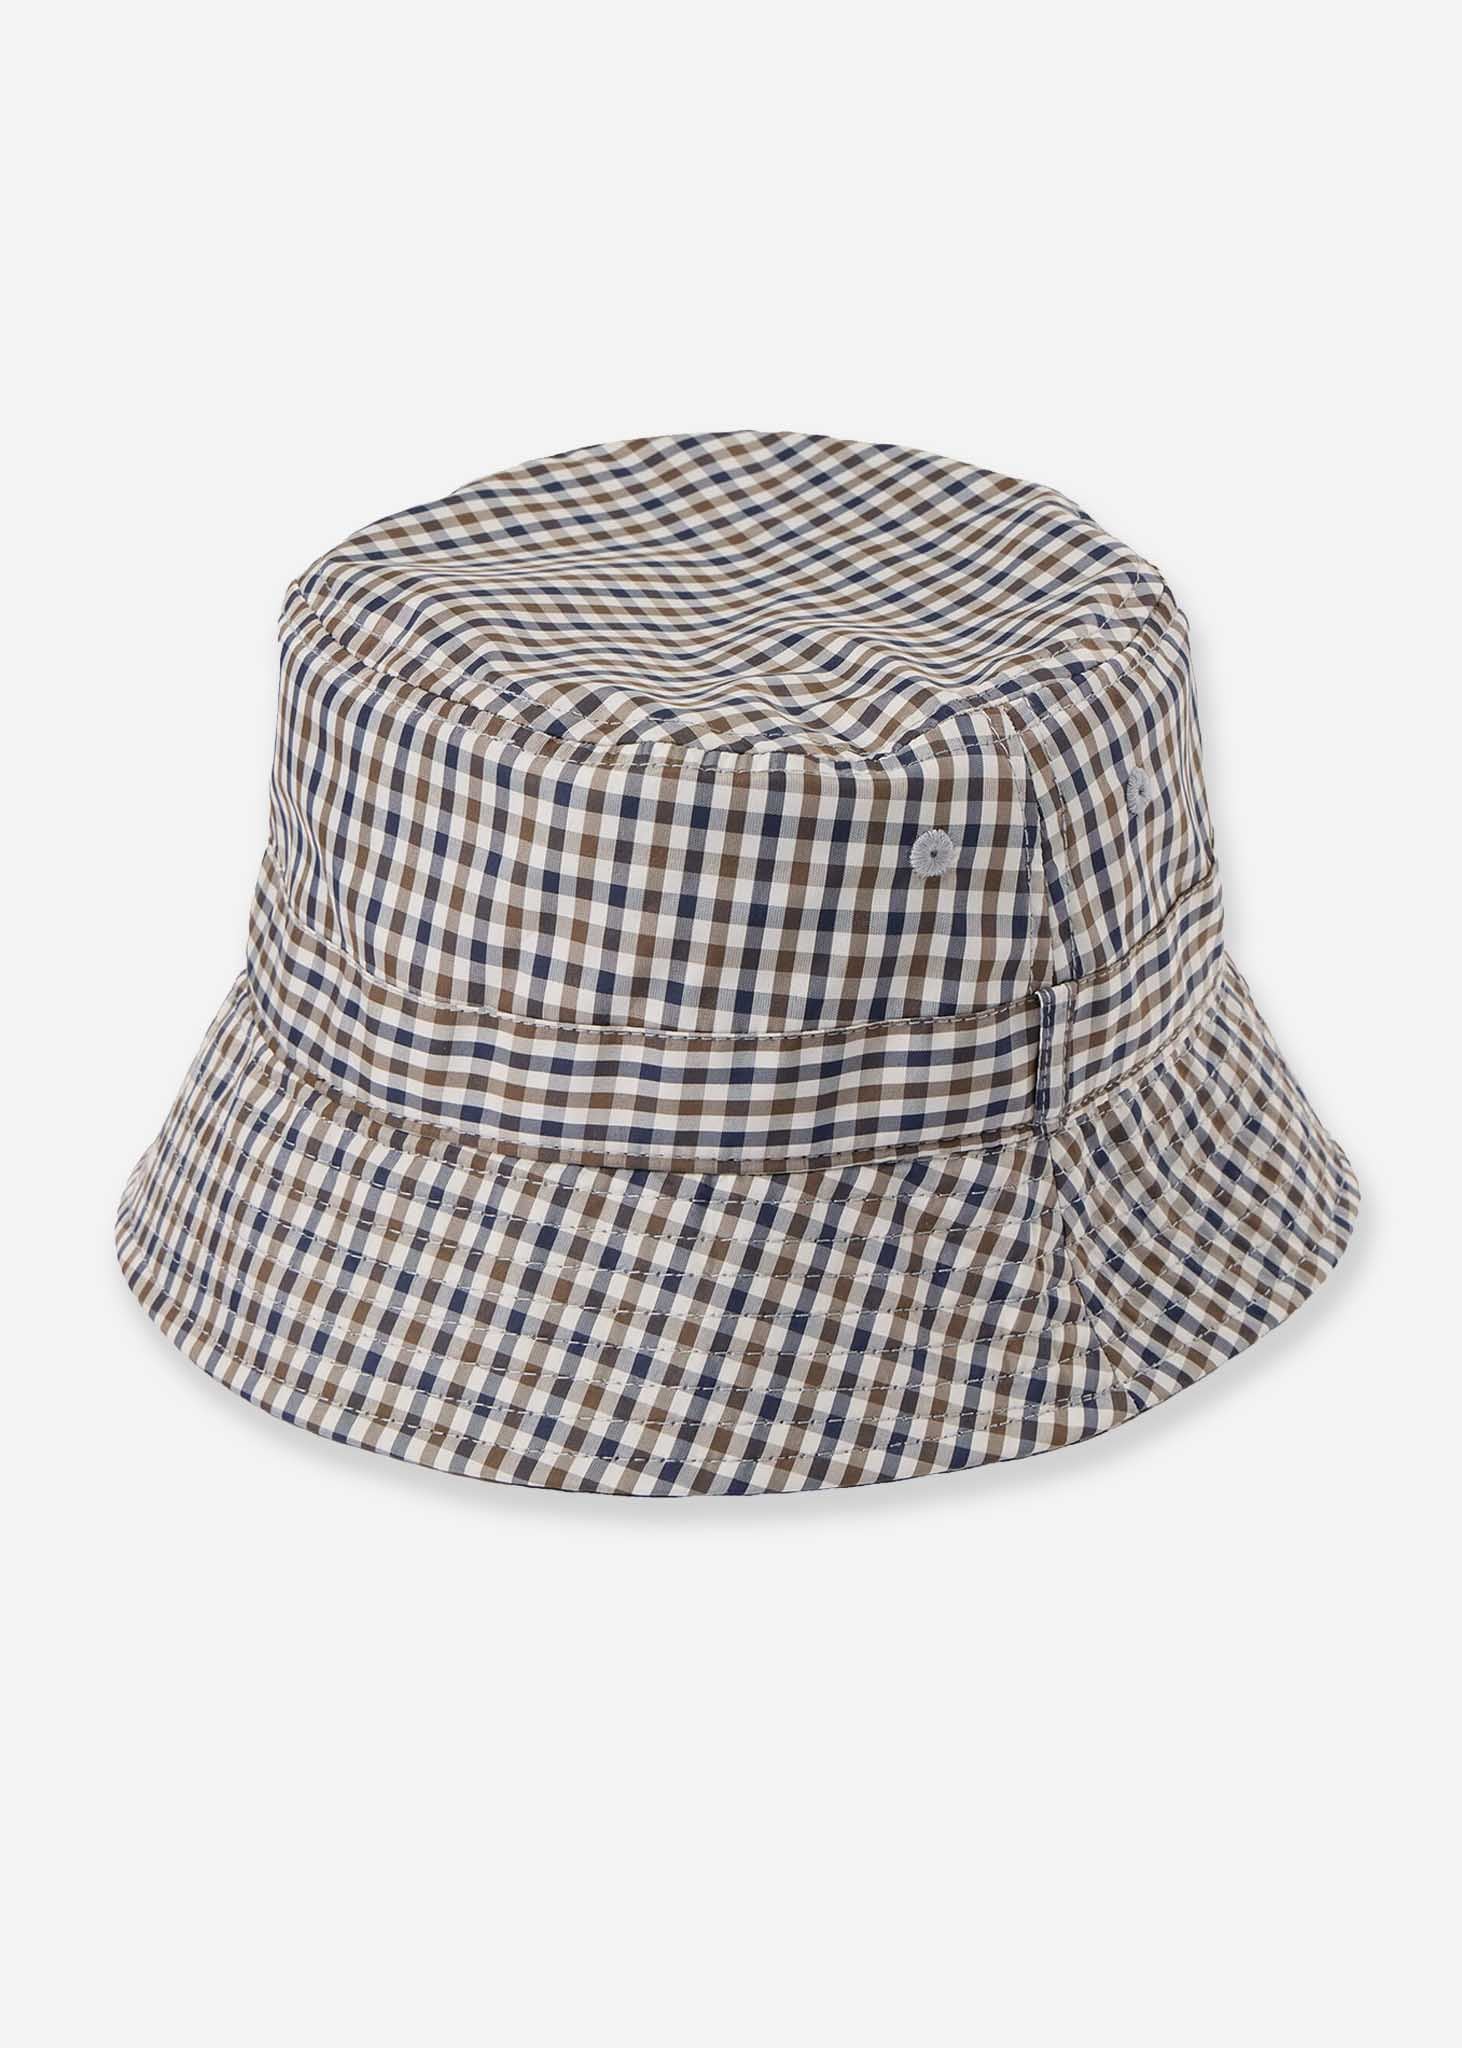 Weekend Offender Bucket Hats  Queensland bucket hat - check 